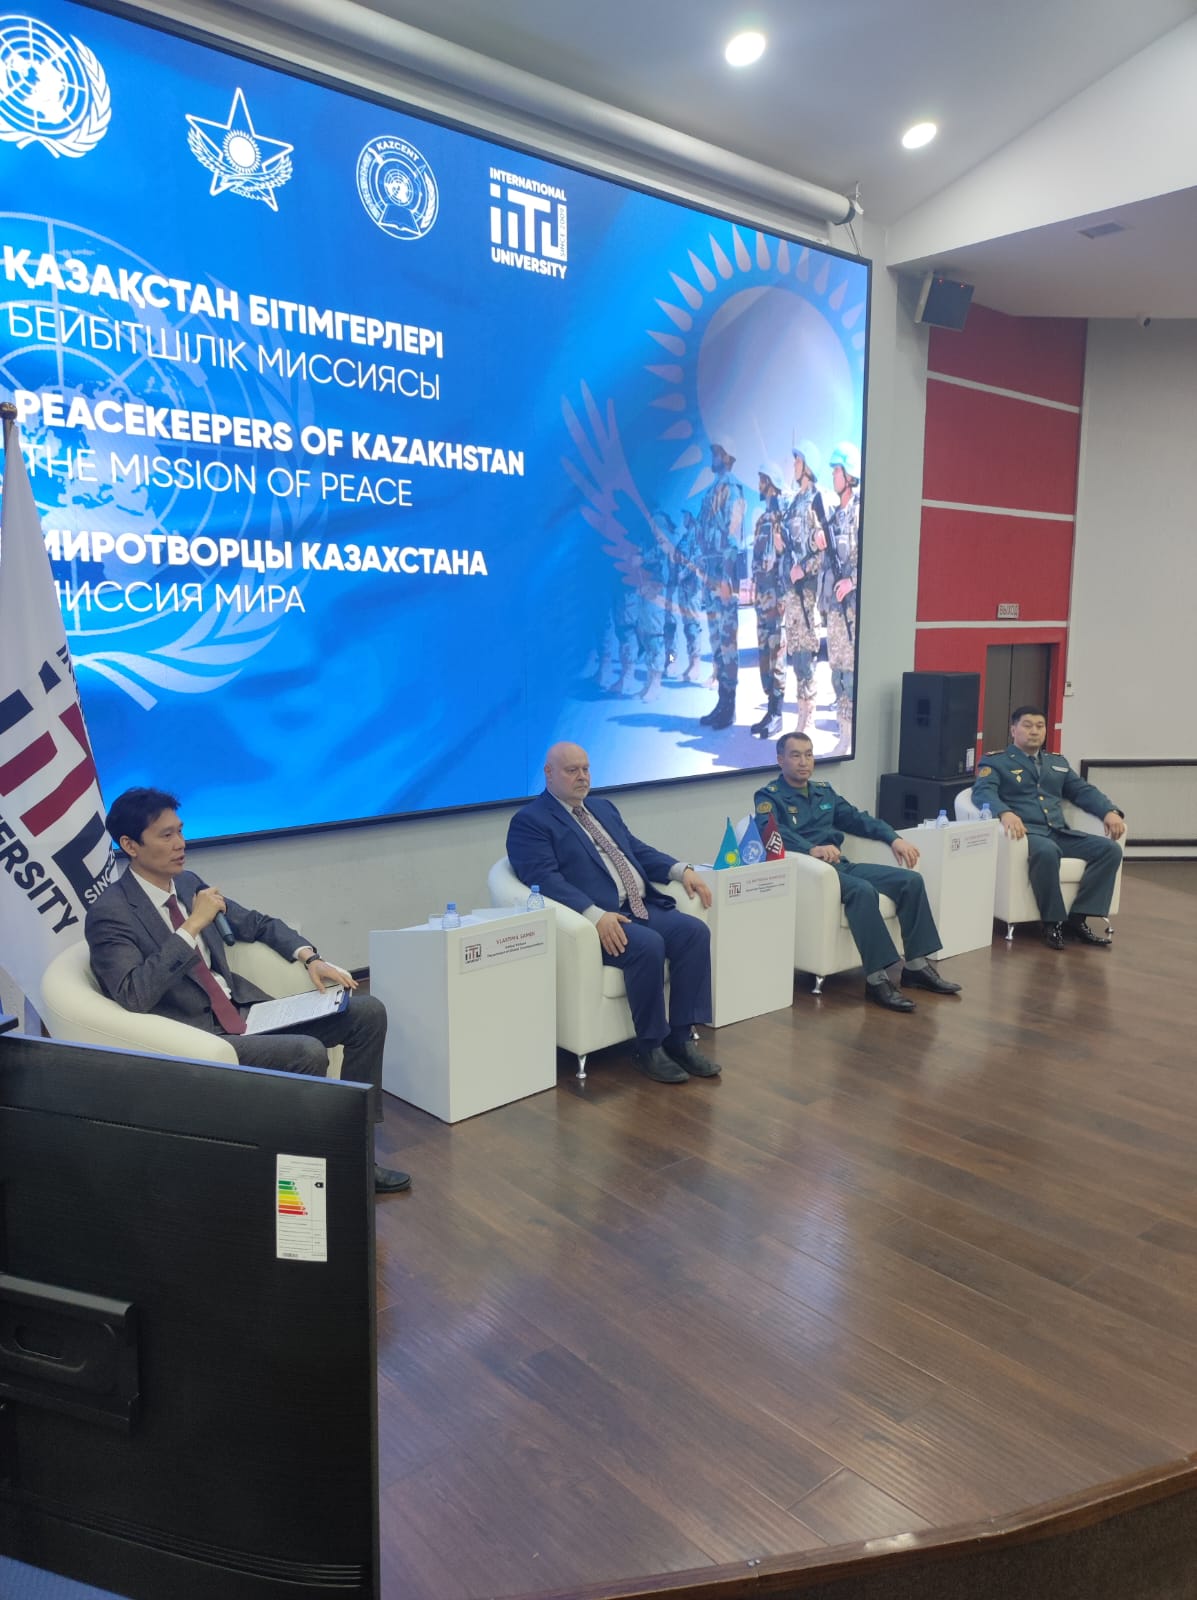 Участие в форуме «Миротворцы Казахстана. Миссия мира»